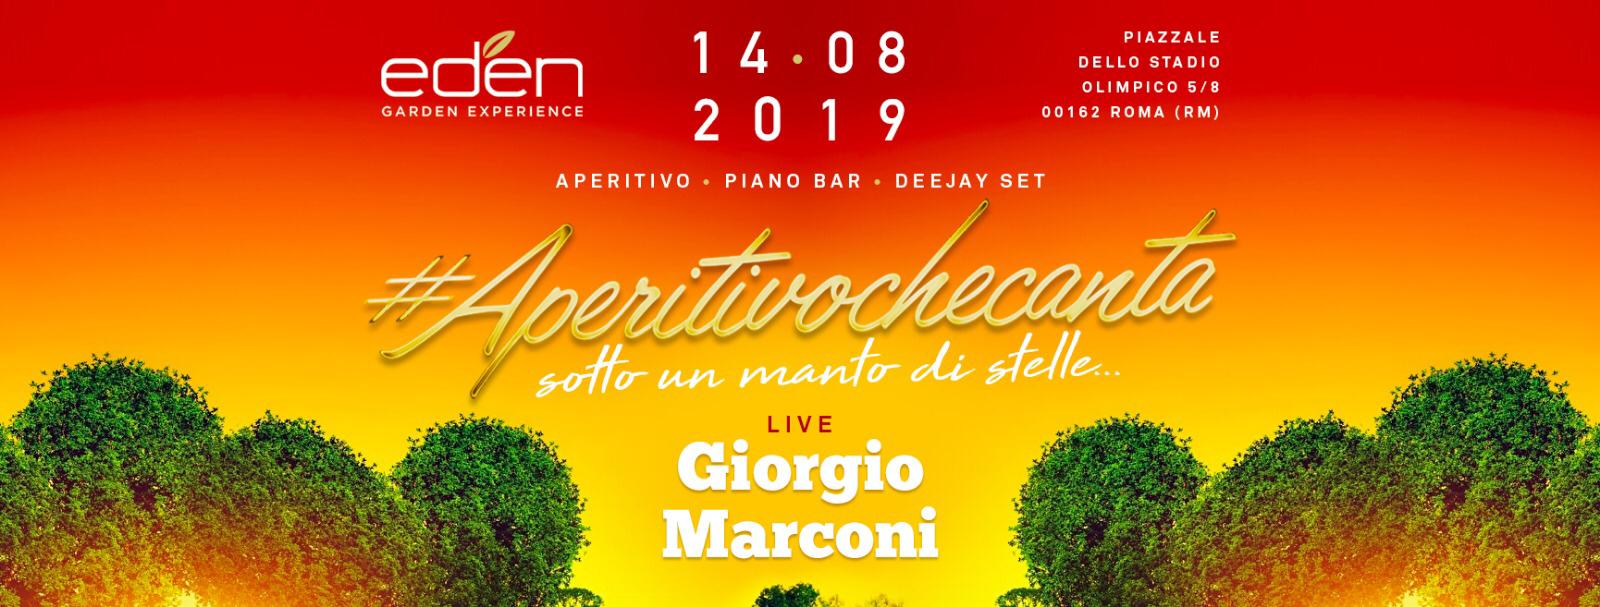 EDEN Roma Mercoledì 14 Agosto 2019 - AperitivocheCanta